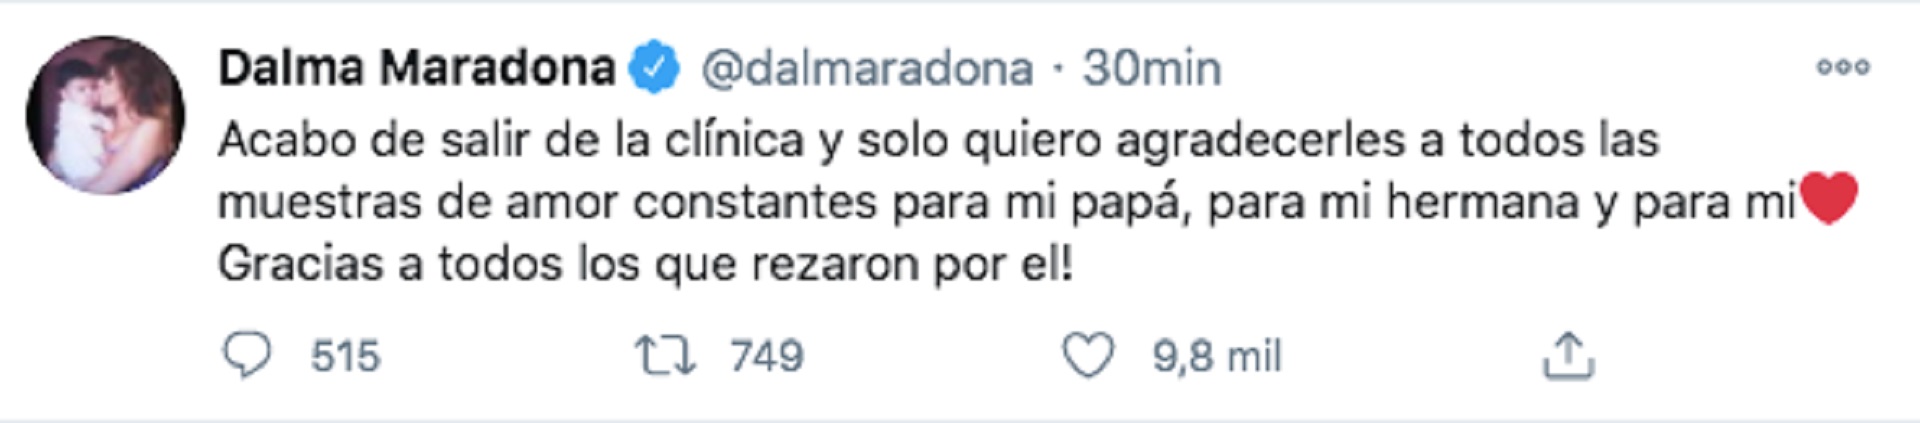 La publicación de Dalma Maradona